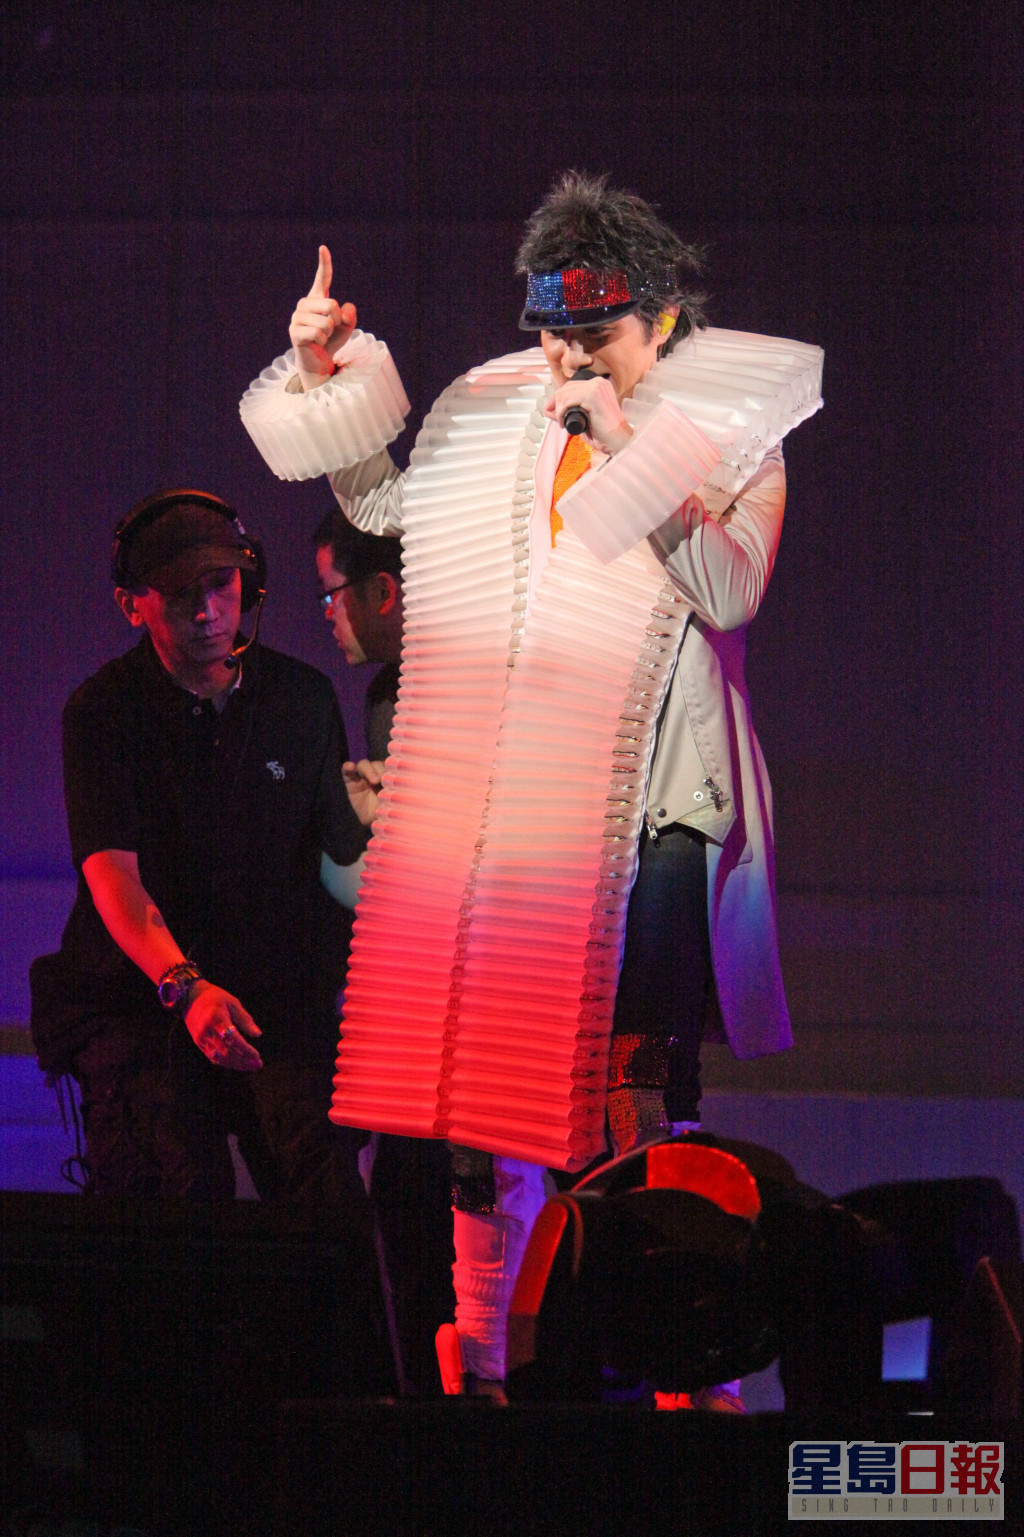 2009年古巨基在红馆举个唱，基仔声控衣服突然冒烟。